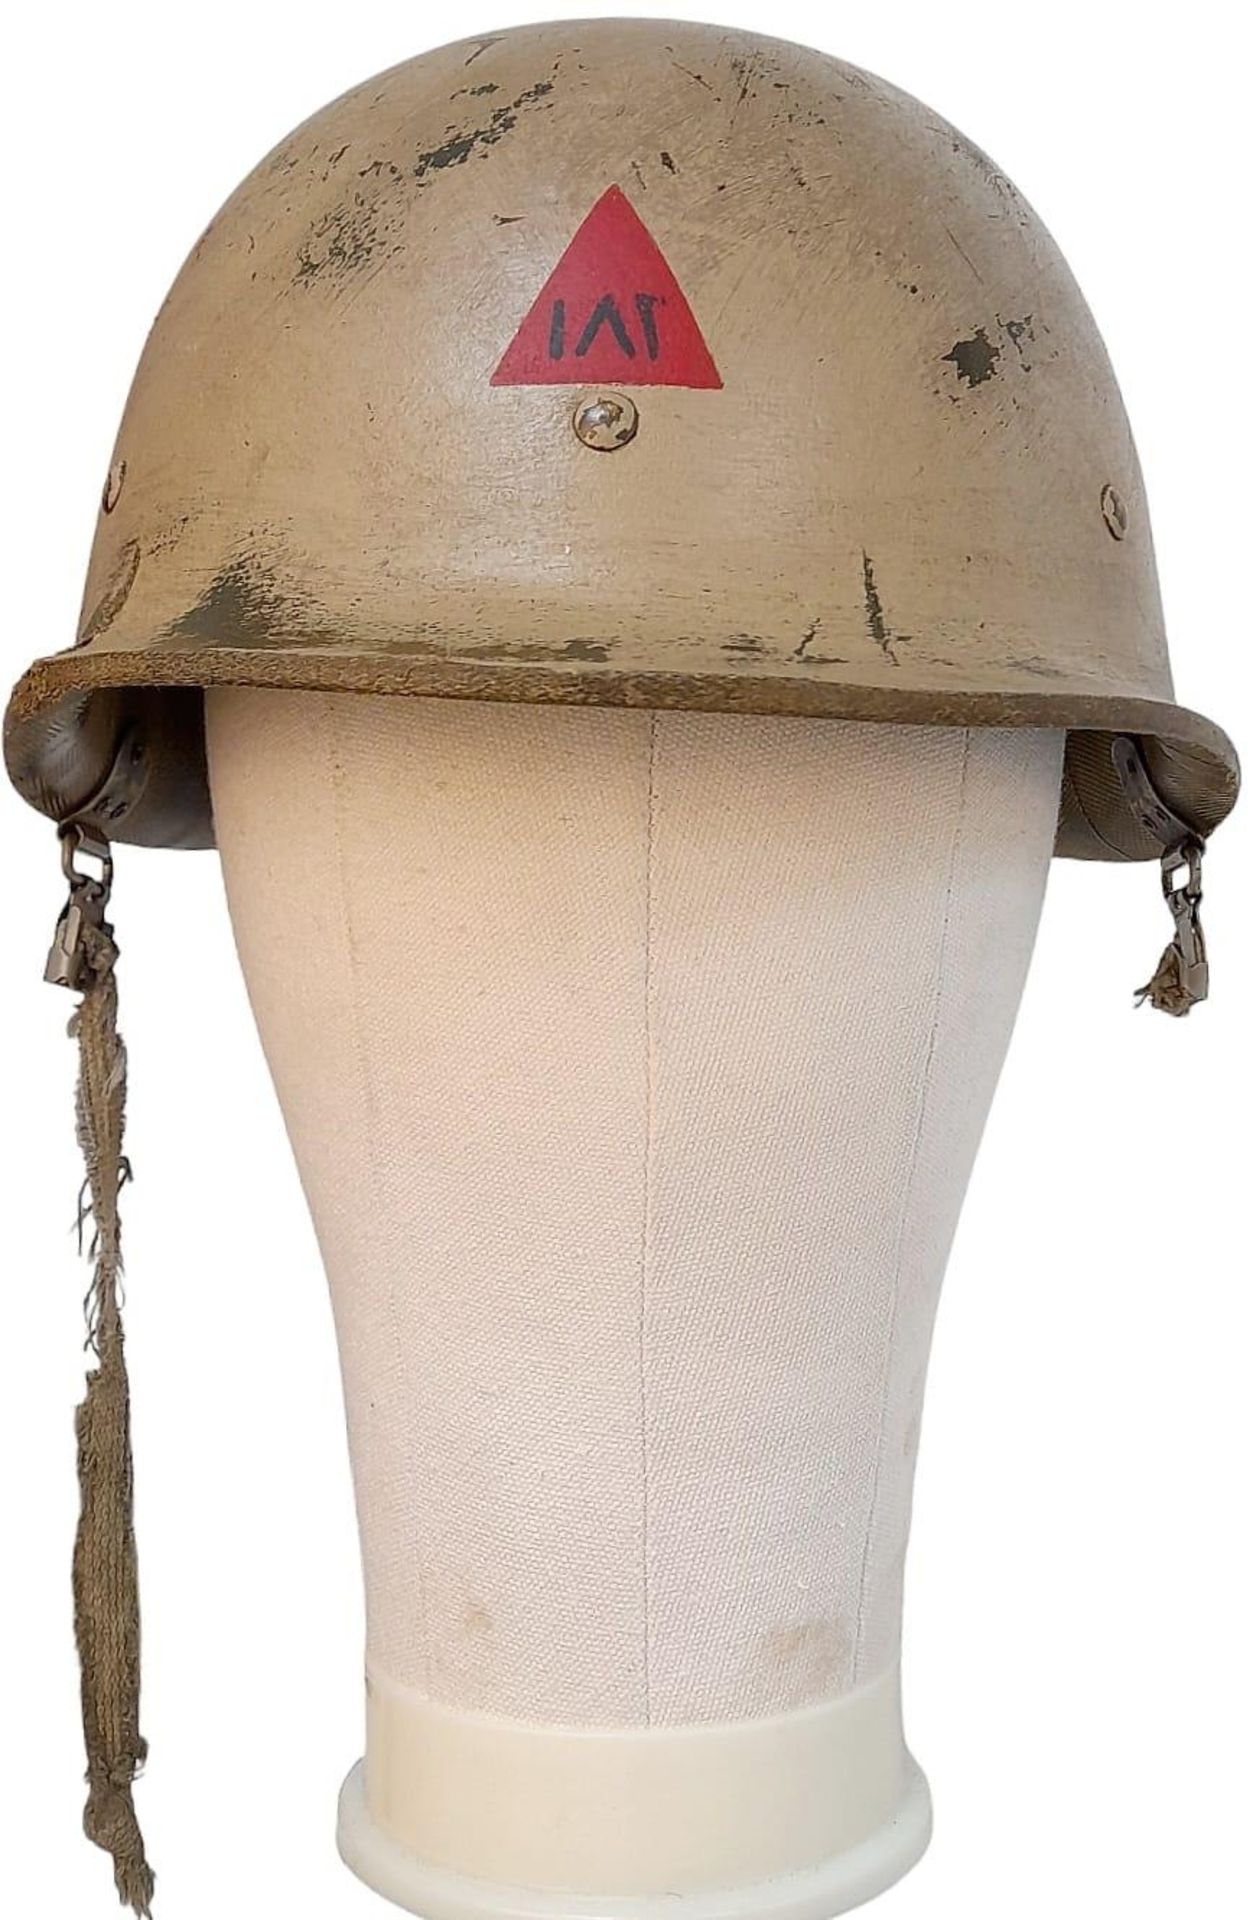 Gulf War 1 (Desert Storm) Iraqi M80 Imperial Guard Helmet.